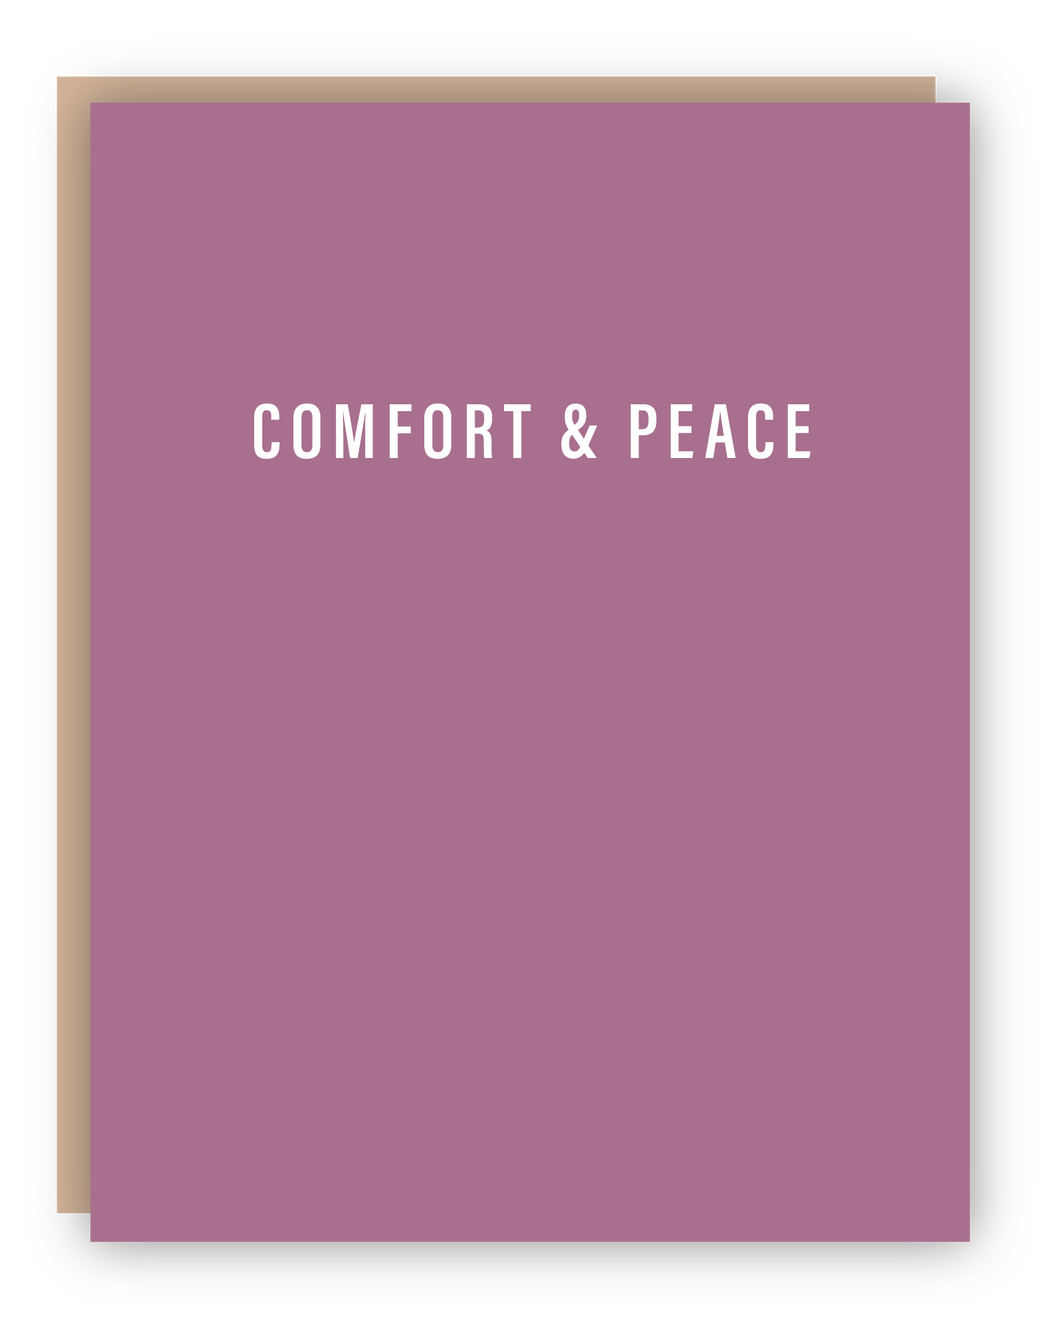 COMFORT & PEACE